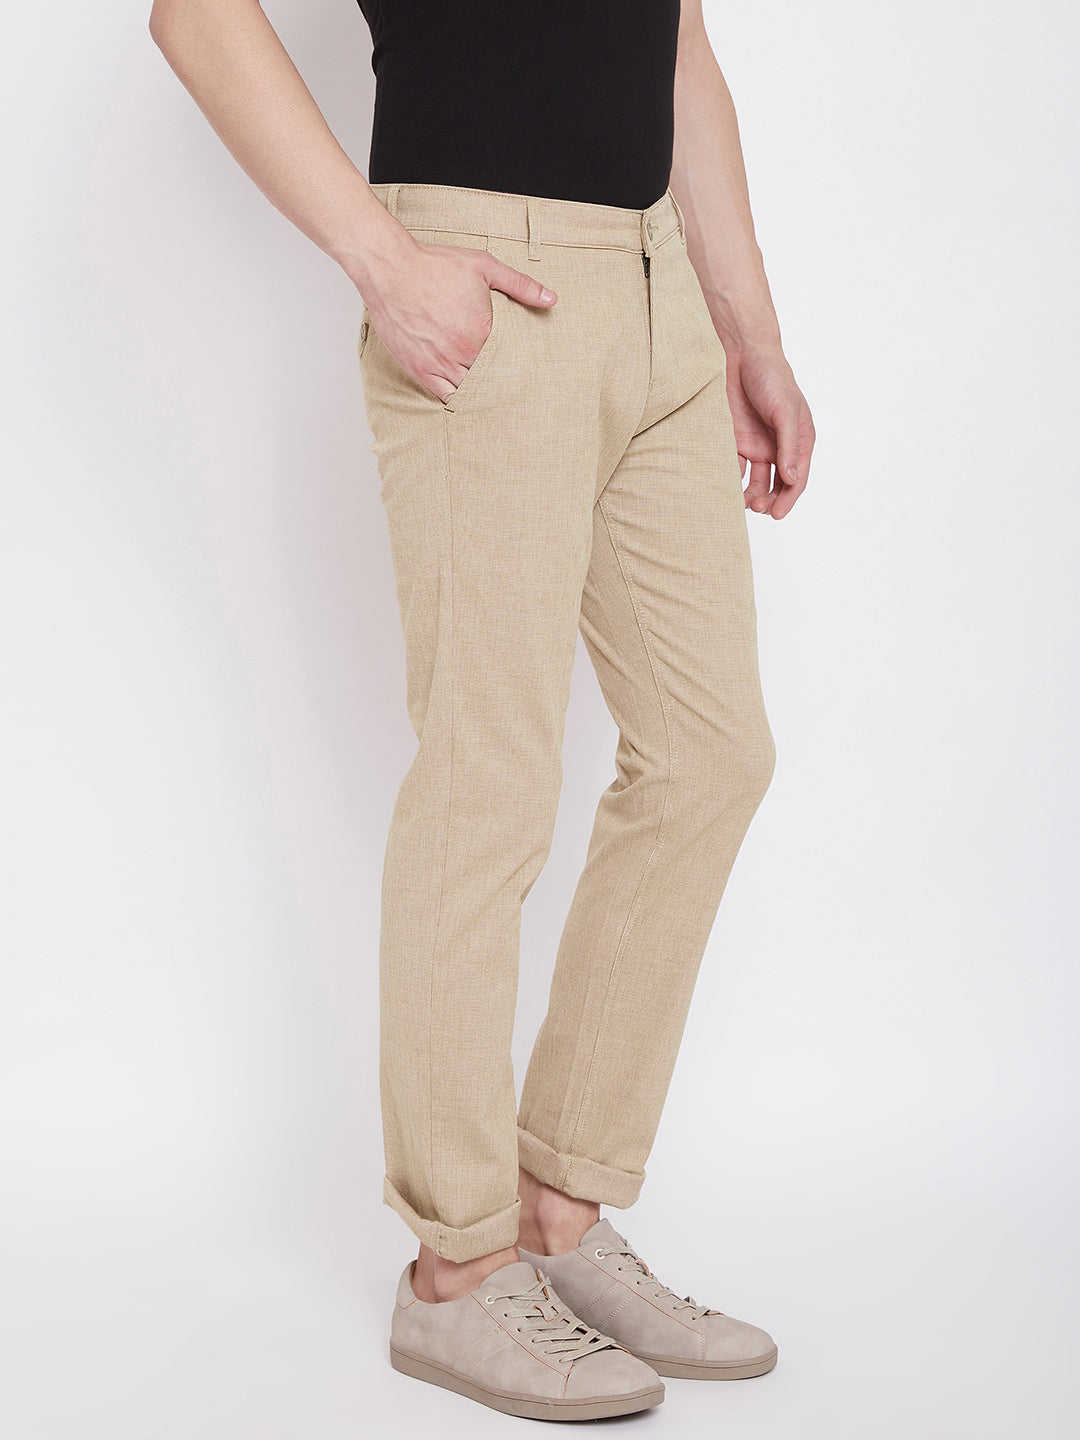 Beige Slim Fit Trousers - Men Trousers